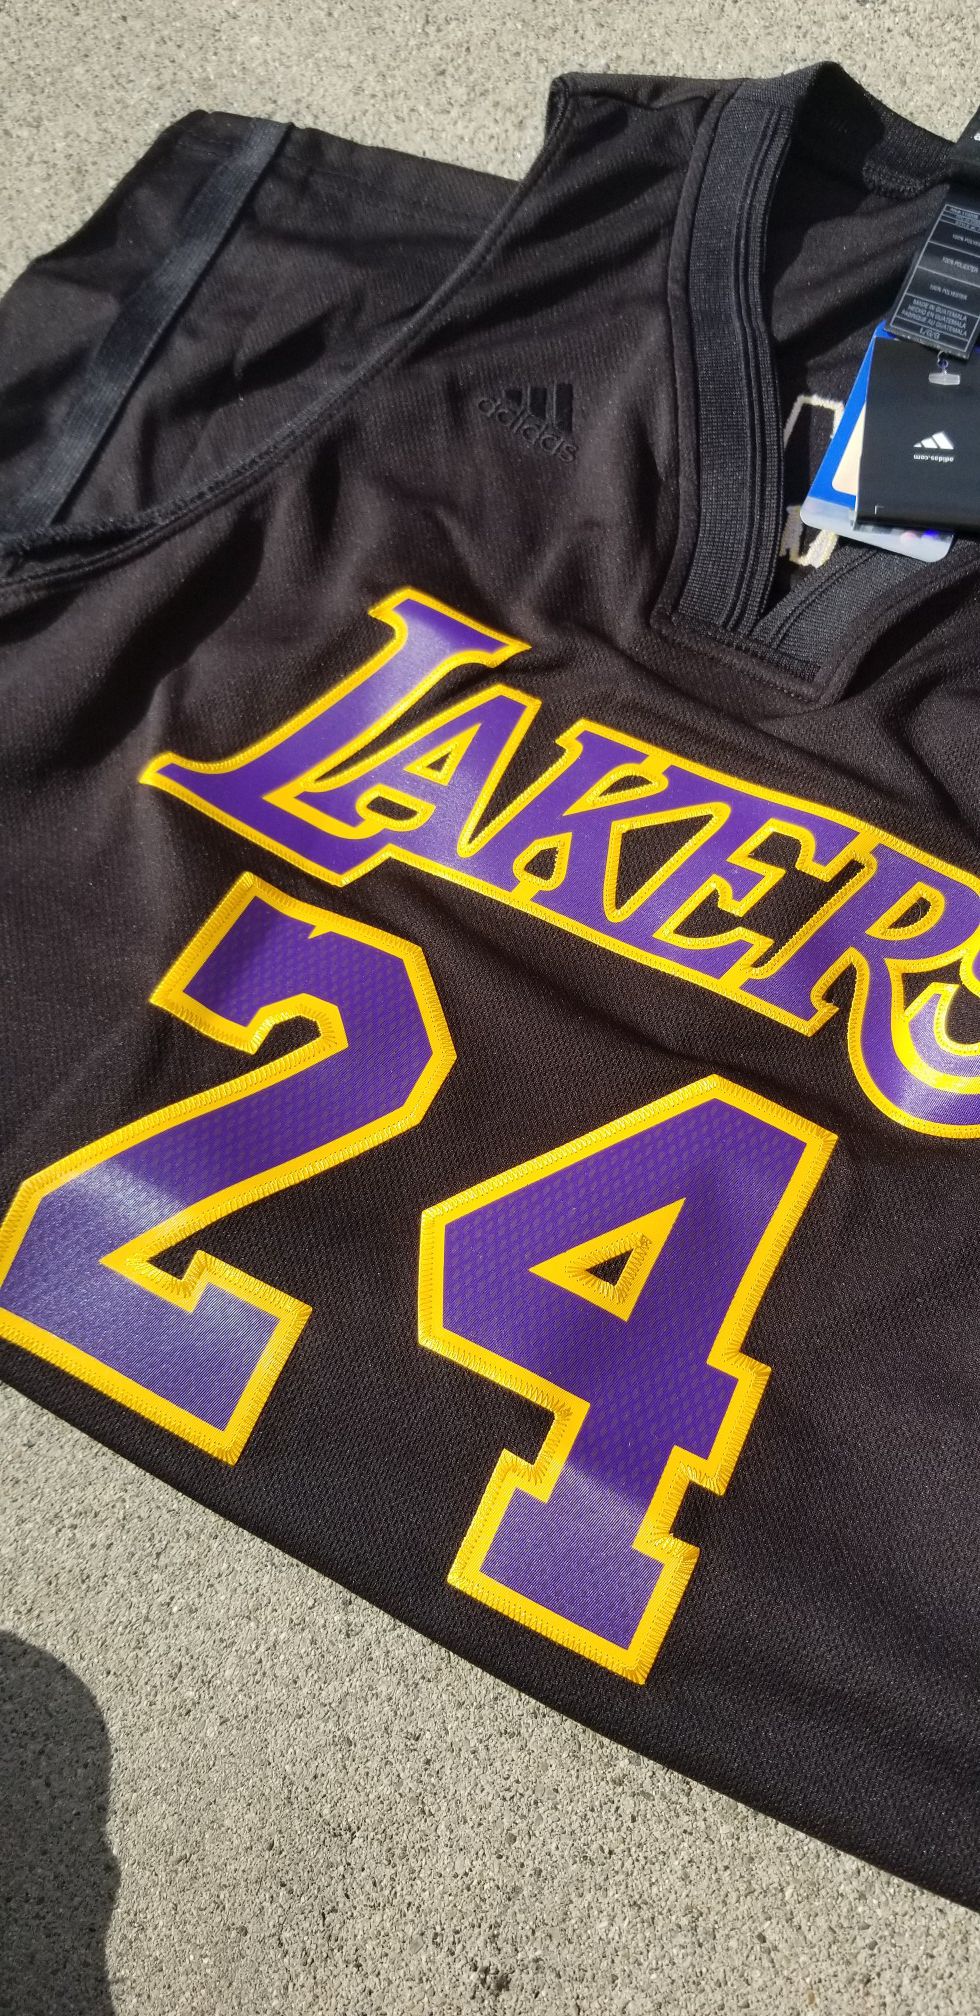 2018 NBA All Star Jordan Kobe Bryant Swingman Jersey Size Large for Sale in  Palmdale, CA - OfferUp